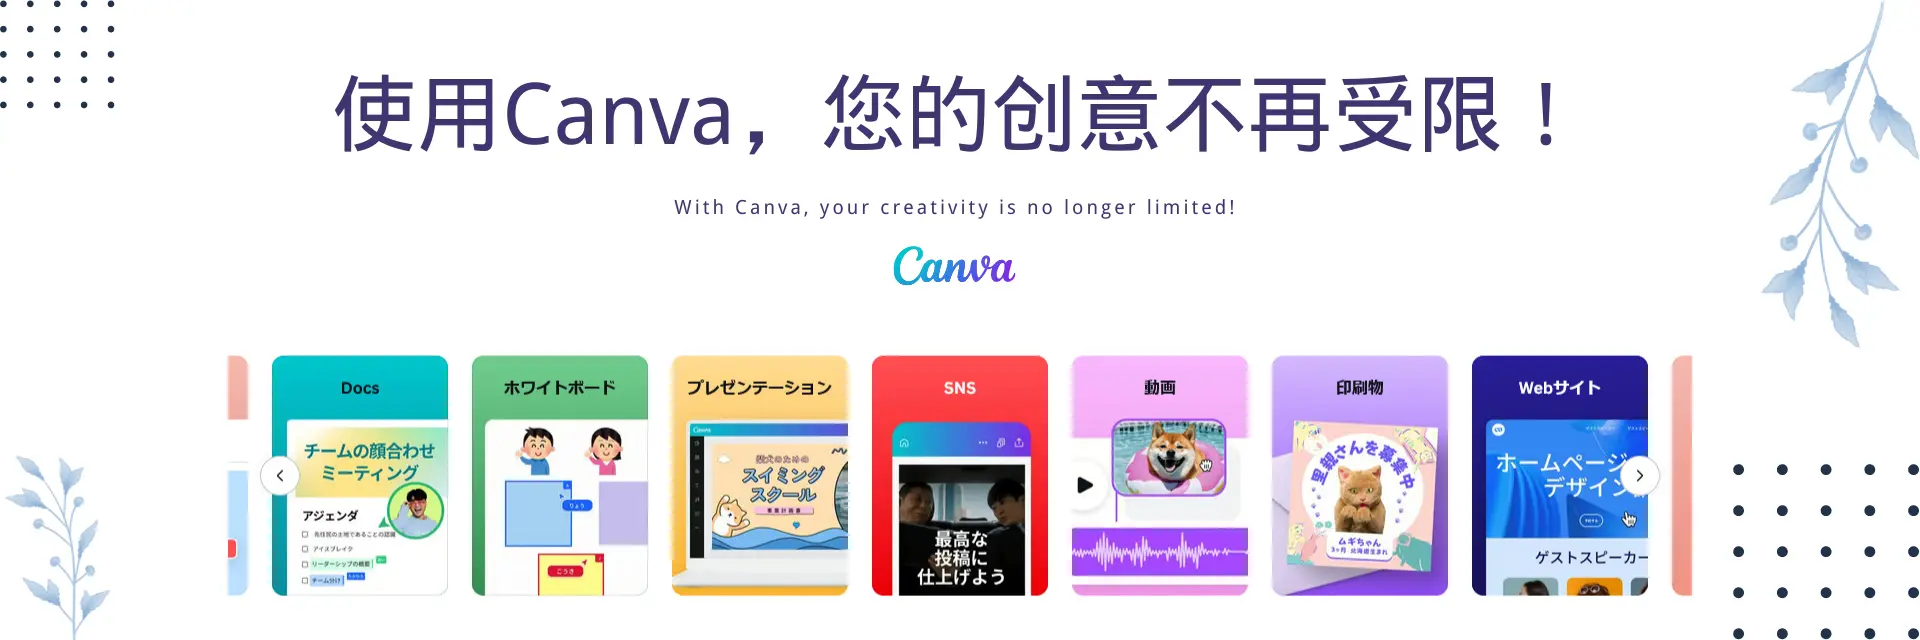 副业时代 站内使用 Canva页面 封面Slide图片 - image-3.webp